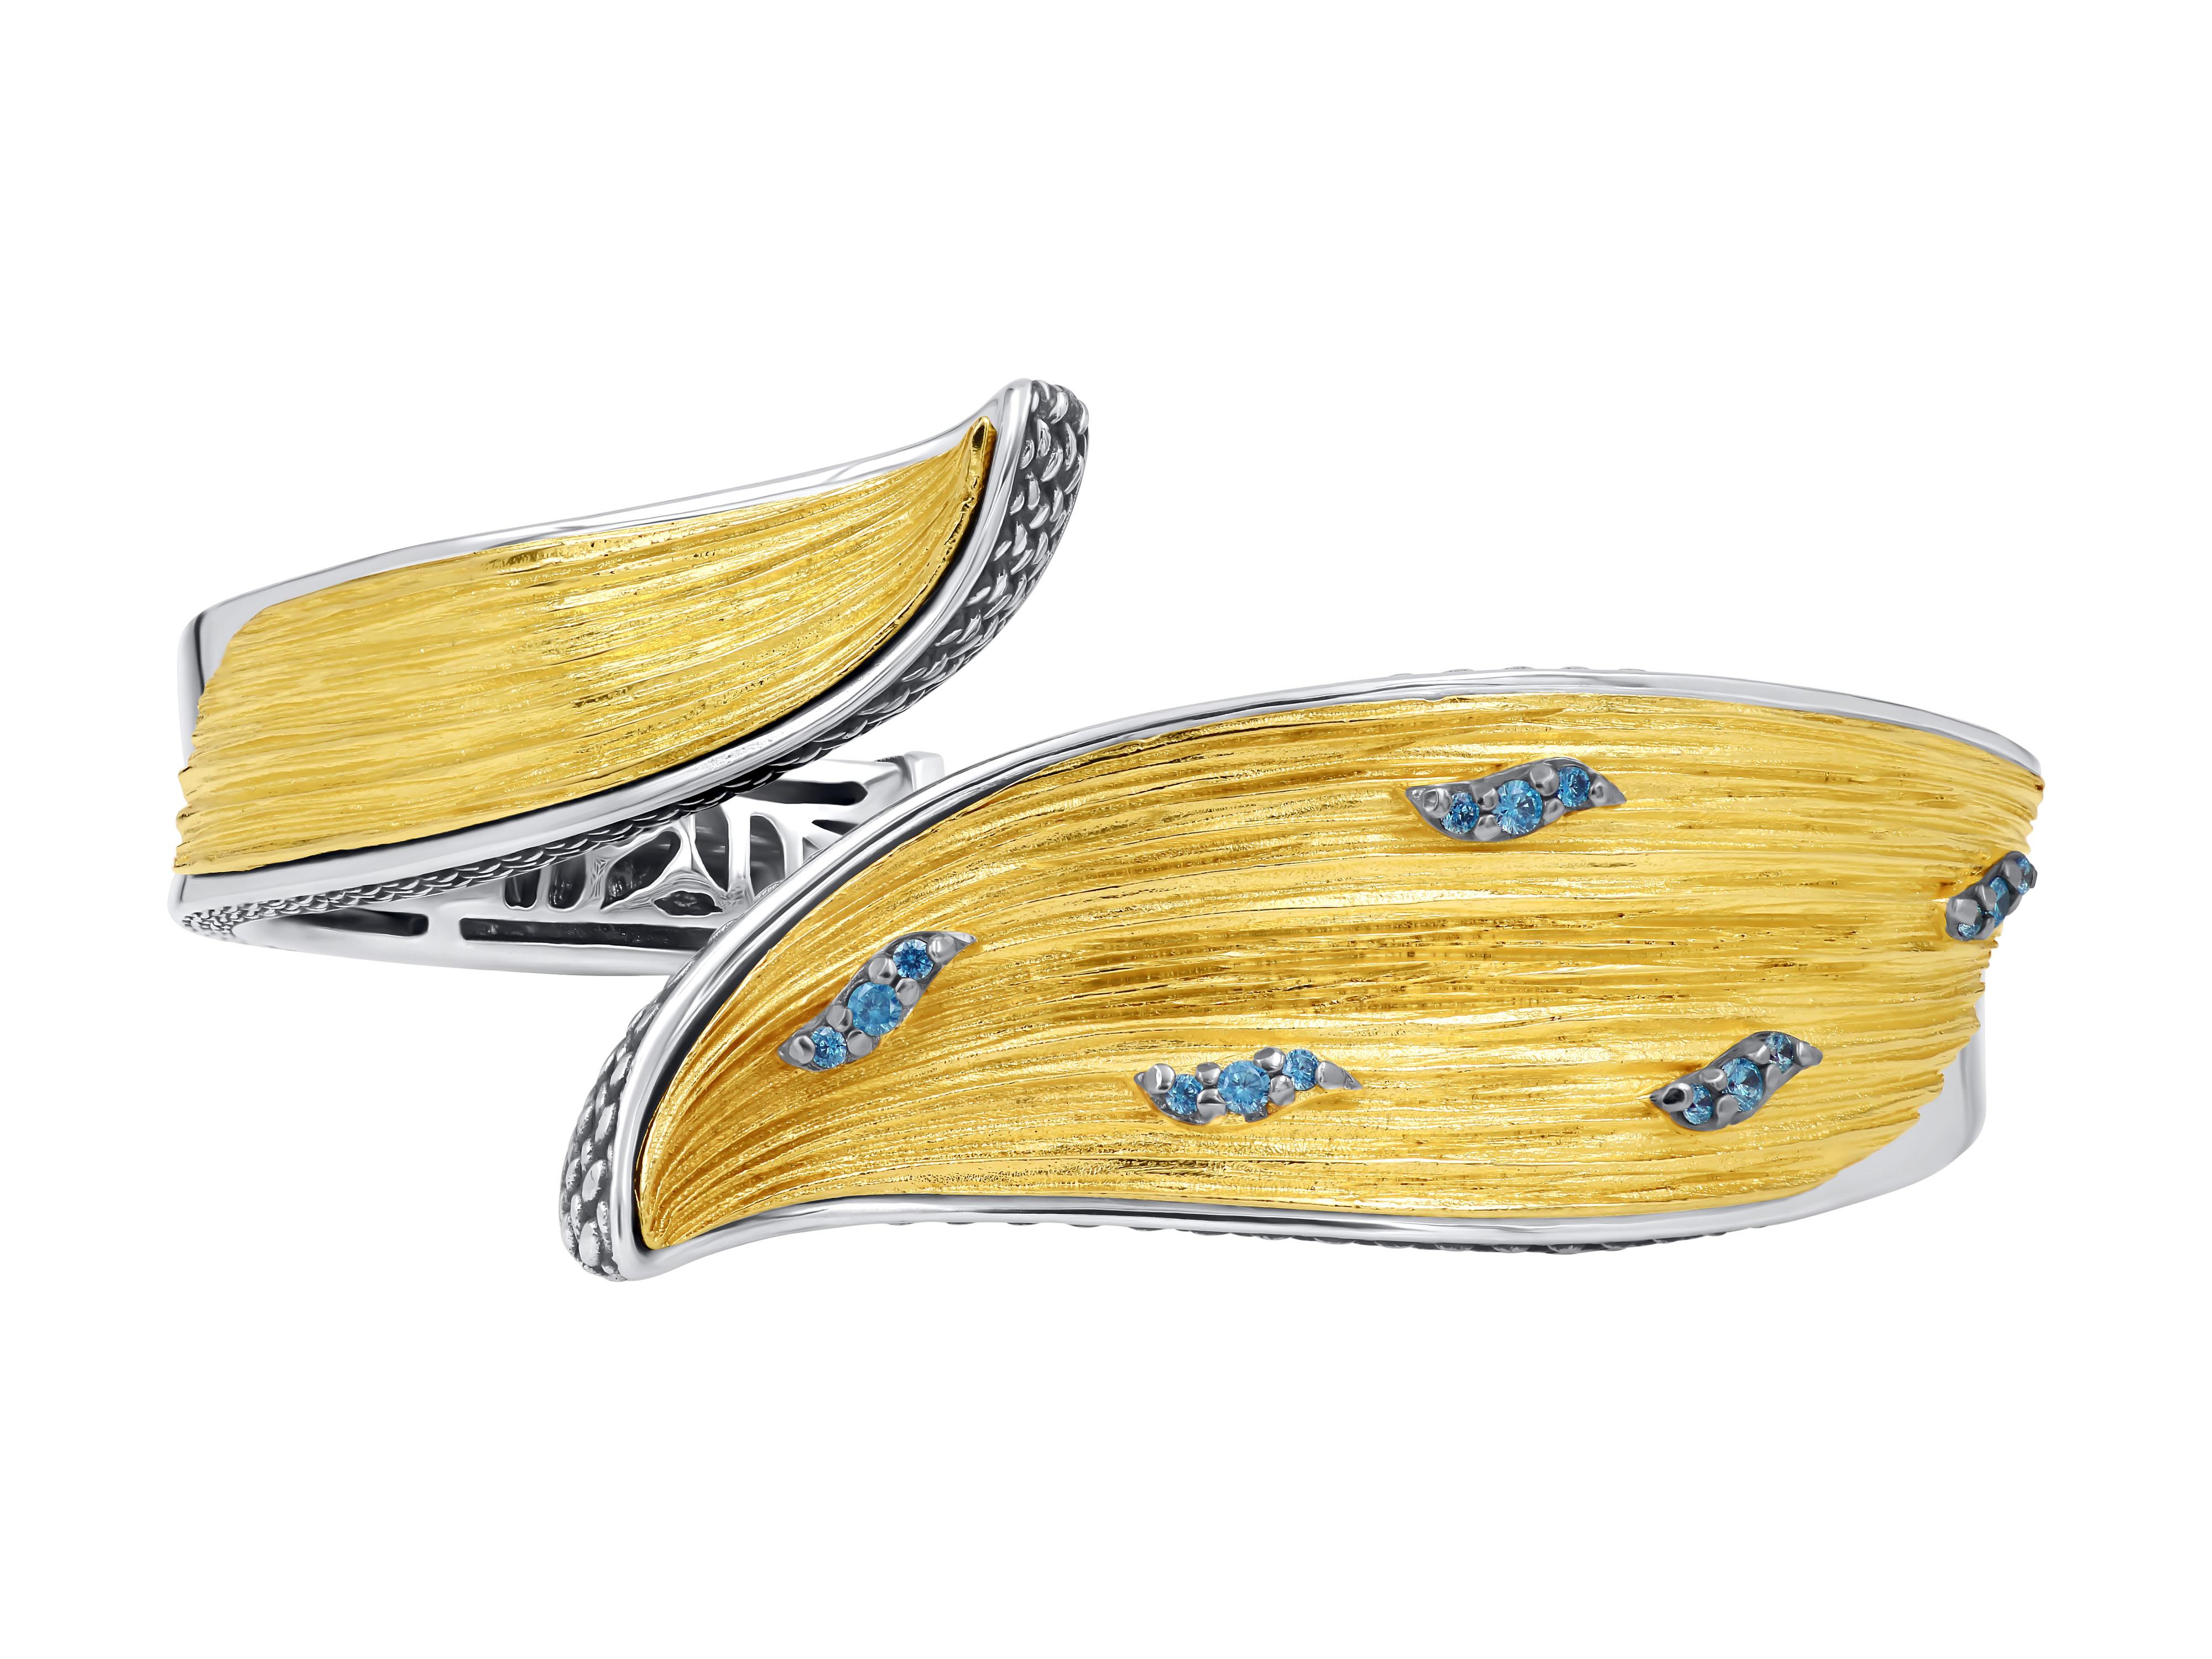 Silberner zweifarbiger Armreif mit vergoldeter, strukturierter Oberfläche und blauen Topas-Steinen. Dieses atemberaubende Schmuckstück verbindet die Eleganz von Silber mit der Schönheit von Blautopas zu einem einzigartigen und auffälligen